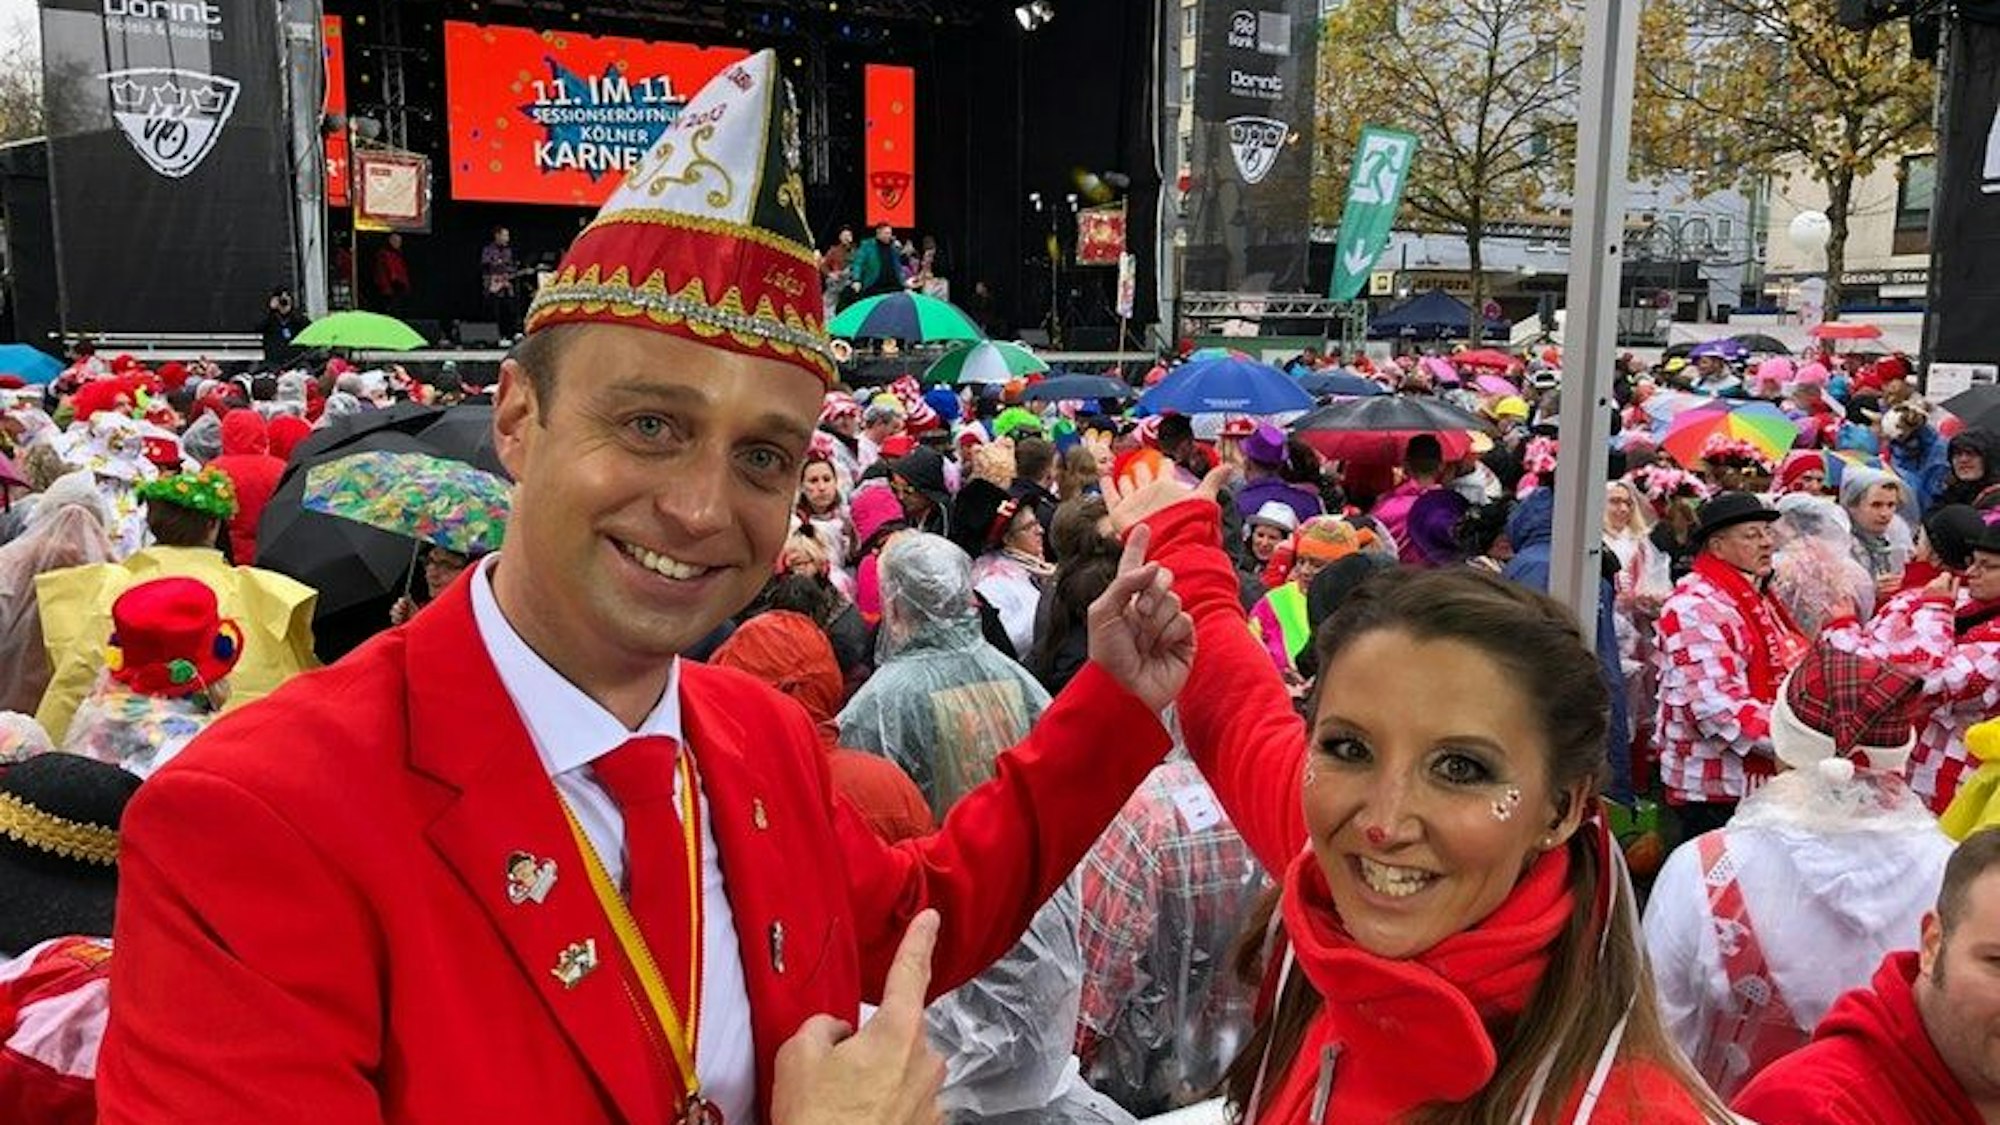 Lukas Wachten und Andrea Schönenborn stehen vor einer Karnevalsbühne